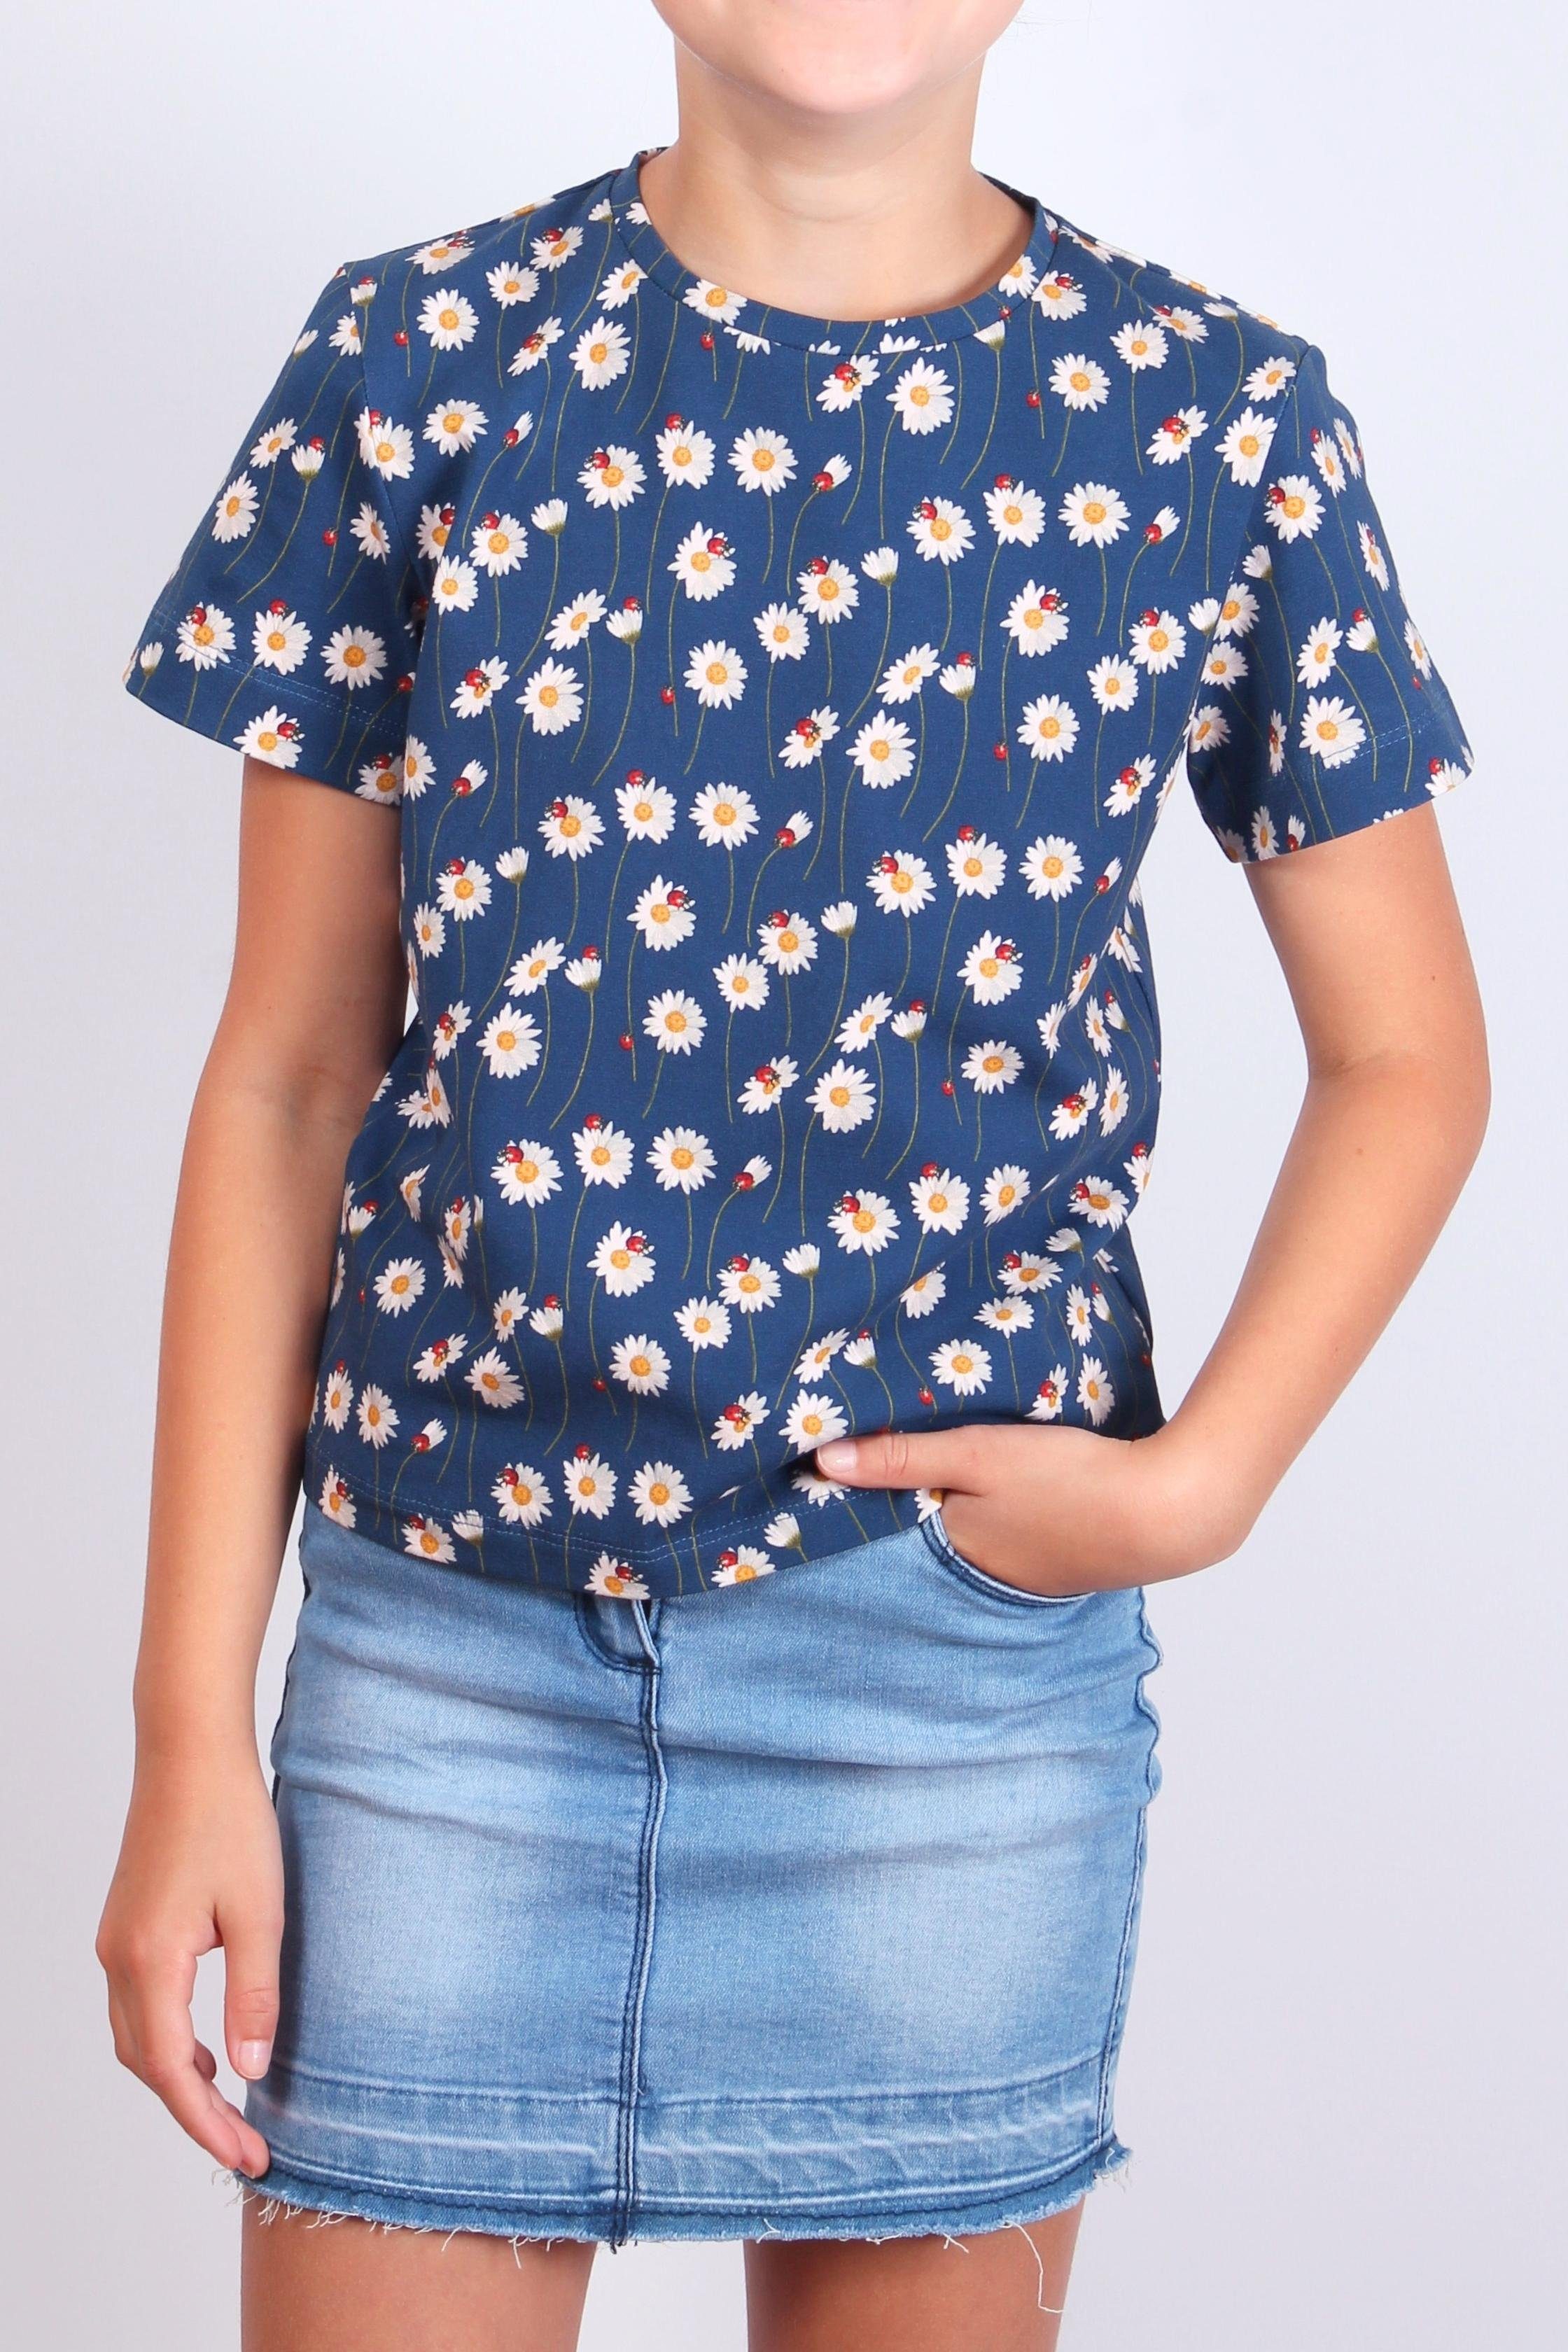 coolismo T-Shirt Print-Shirt für Mädchen Gänseblümchen Baumwolle Rundhalsausschnitt, Alloverprint, mit